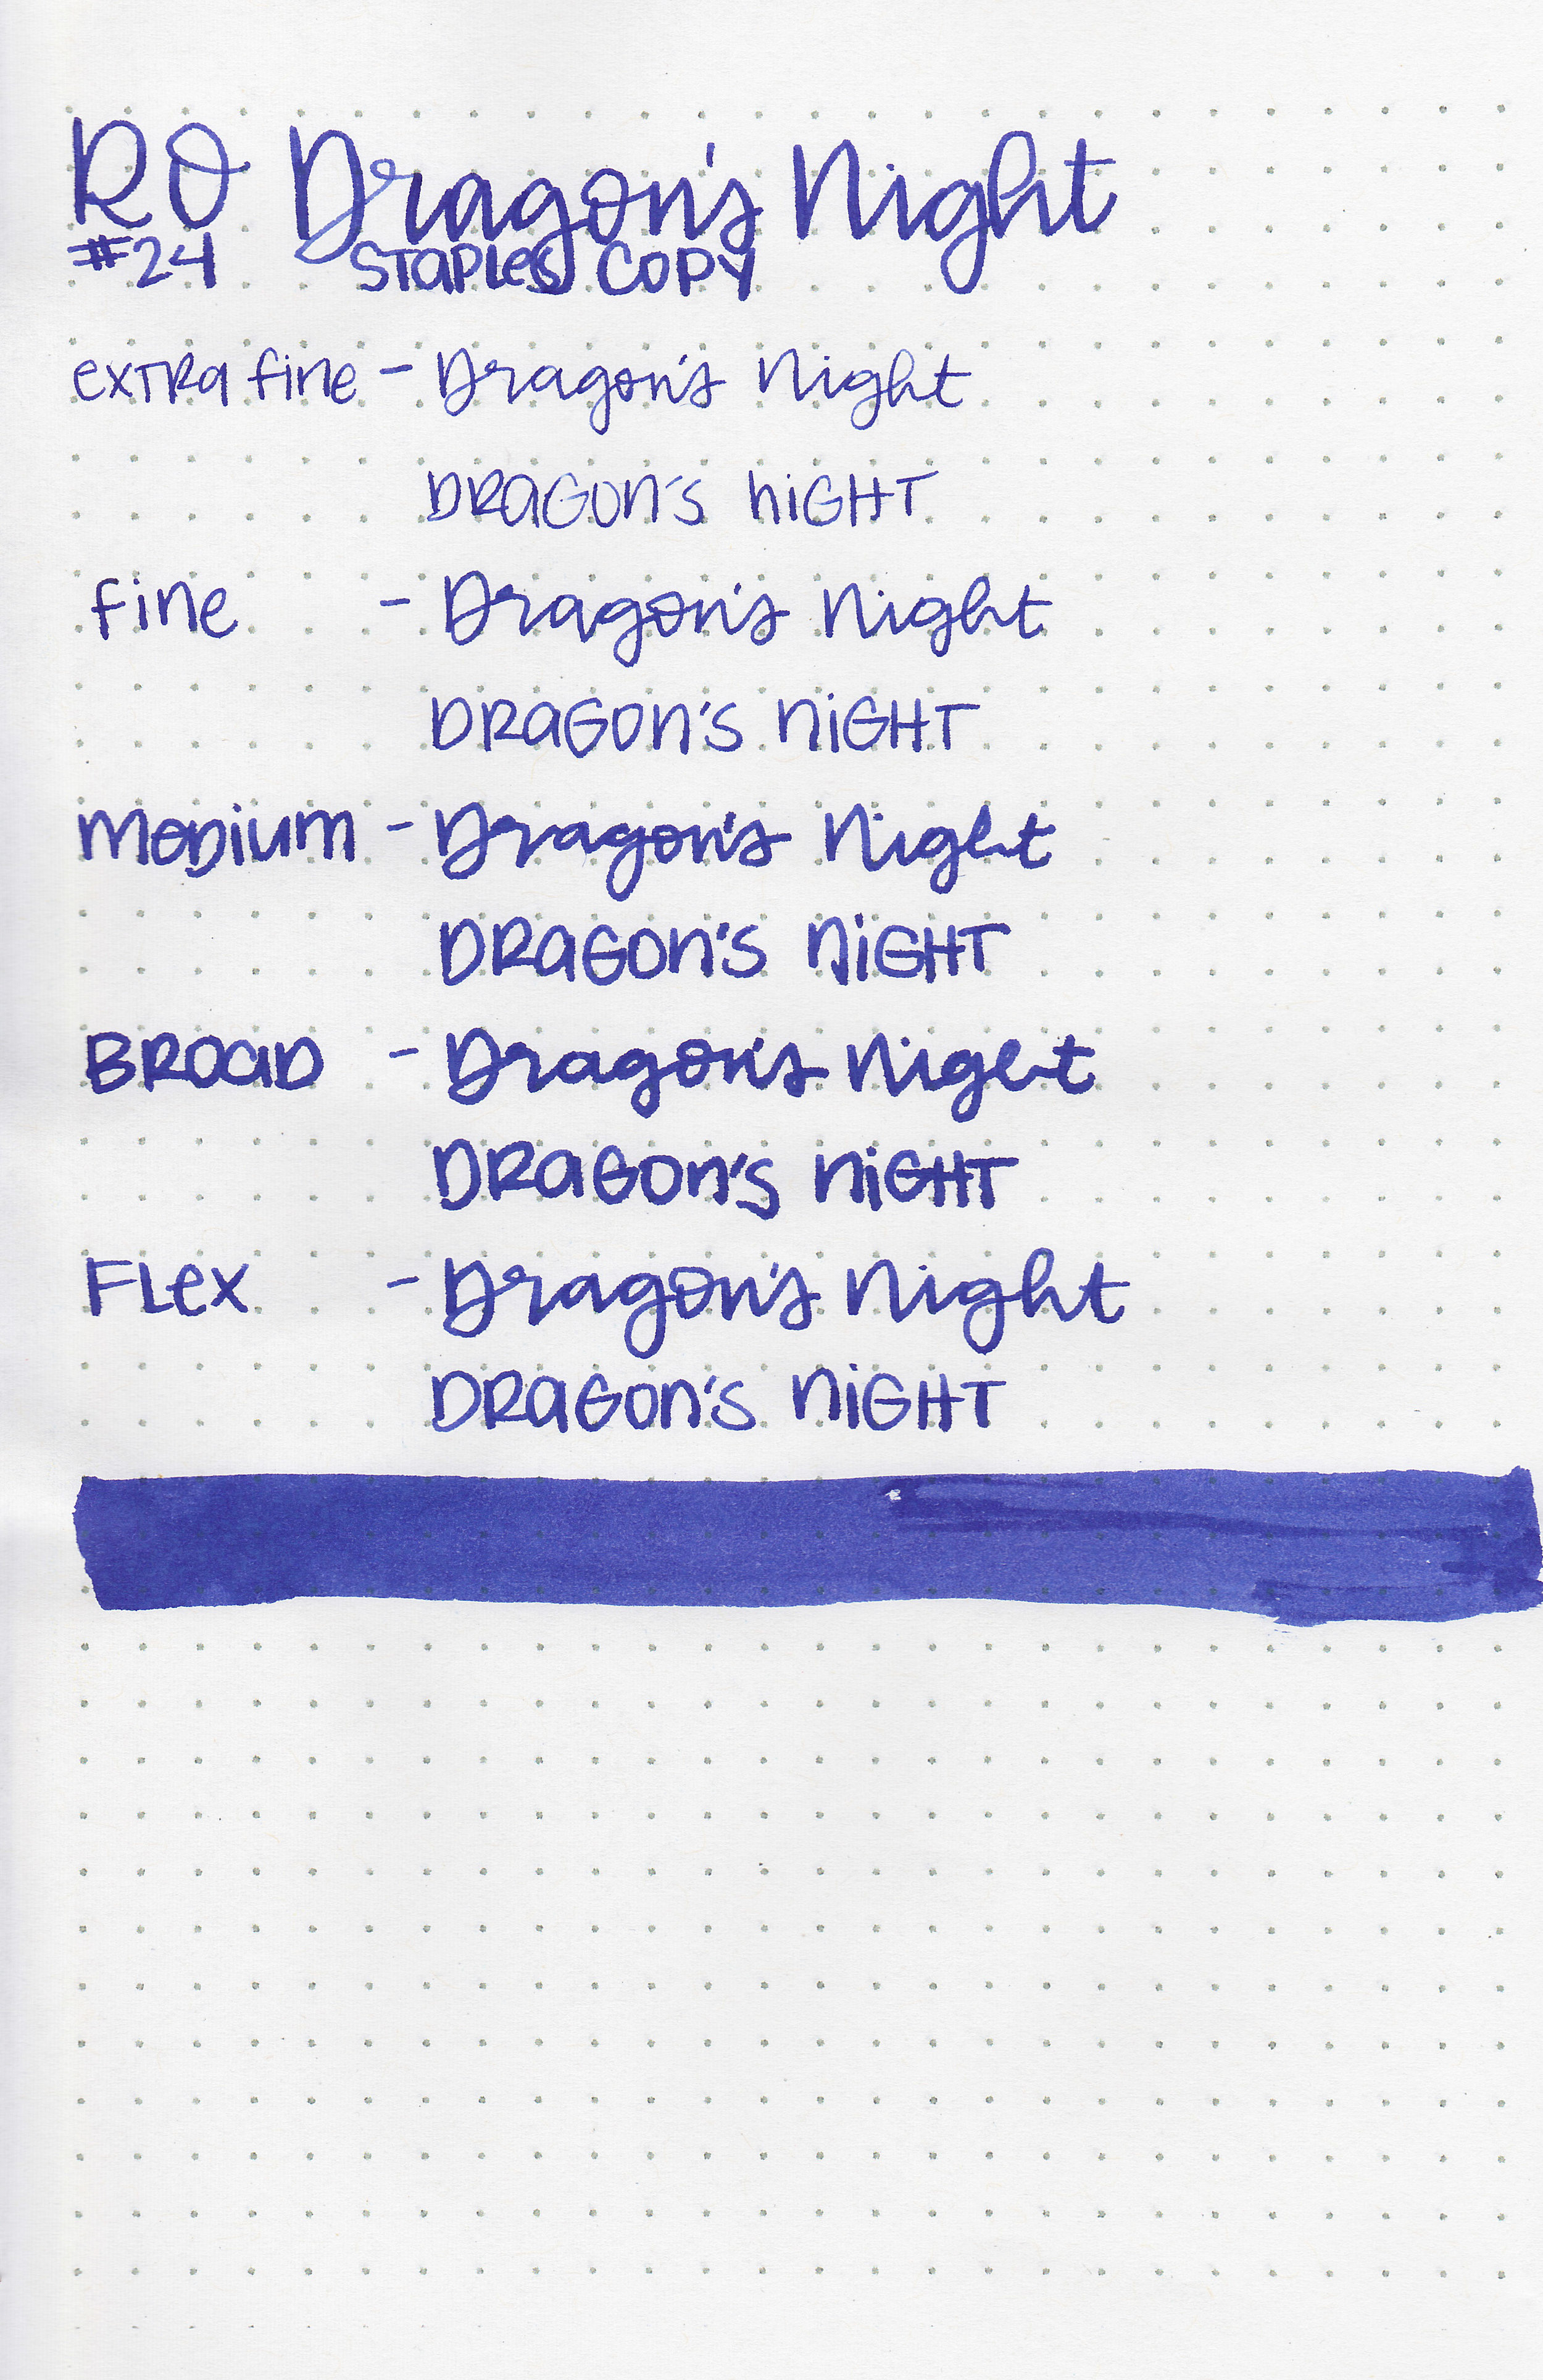 ro-dragons-night-11.jpg